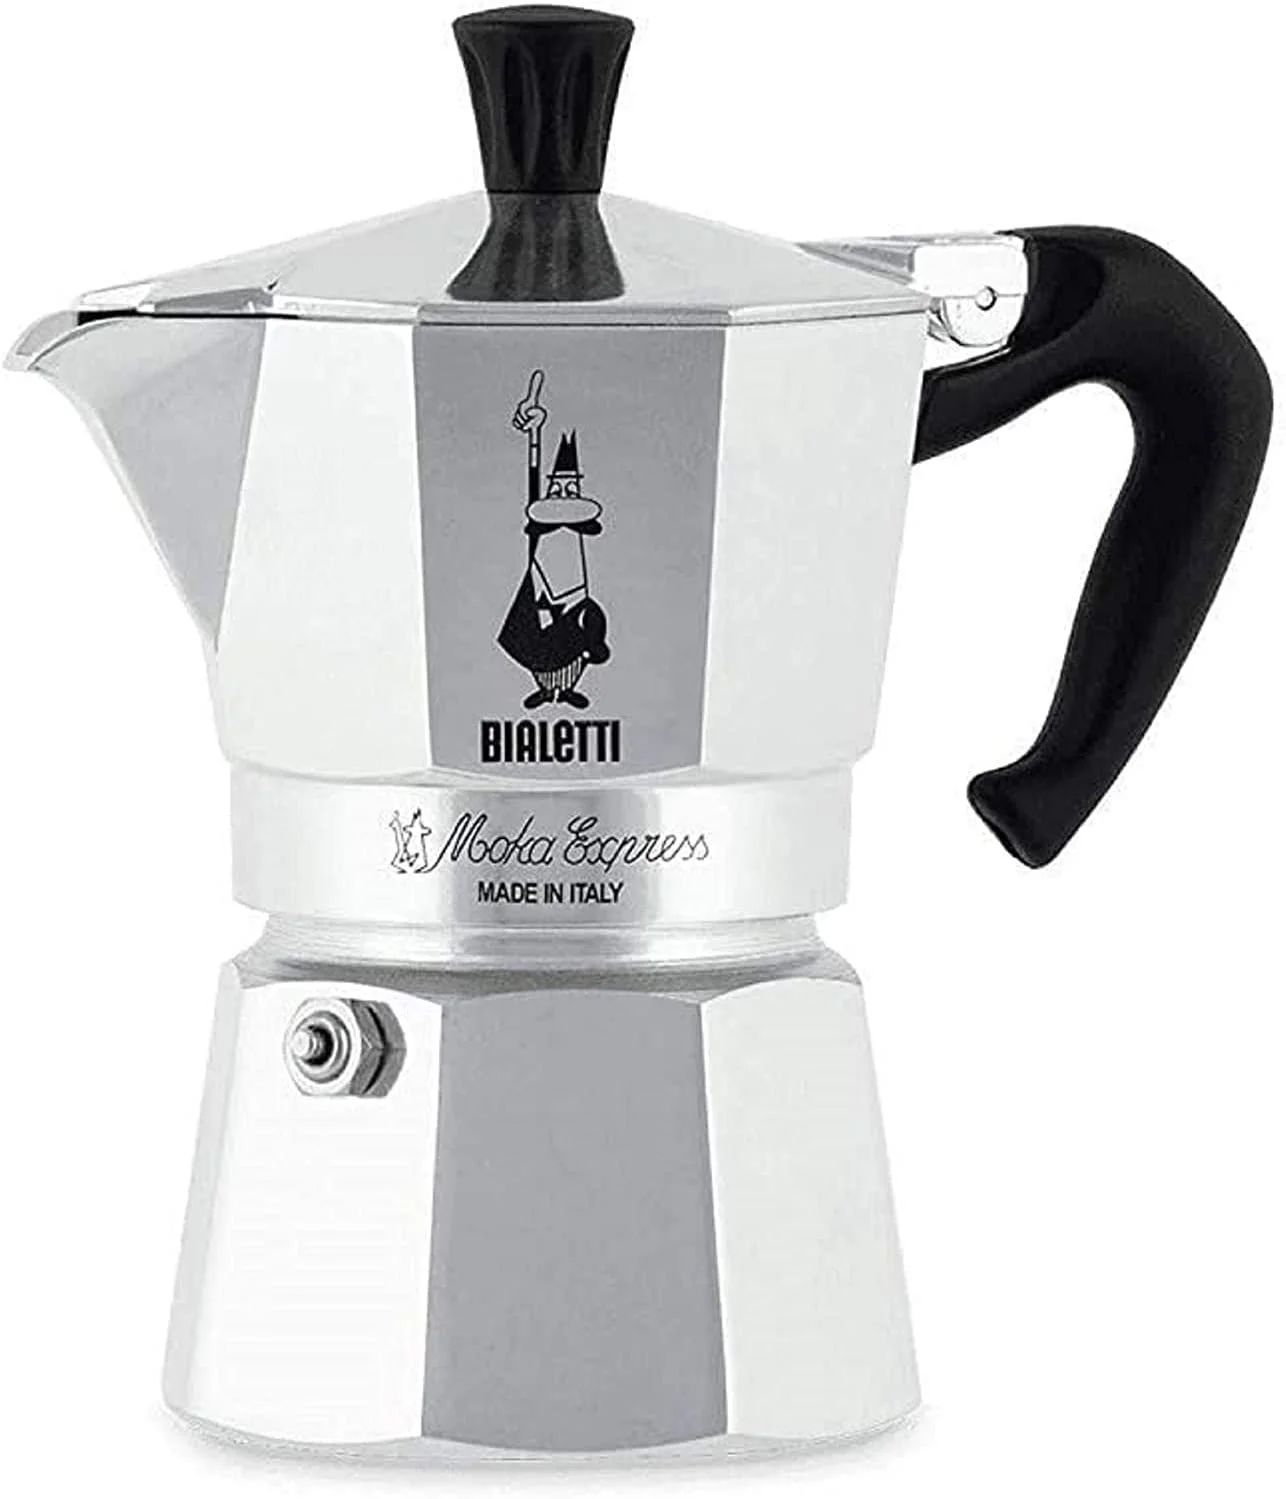 ガスコンロ式 コーヒーメーカー 06800 モカエスプレッソコーヒー用 1-Cup シルバー